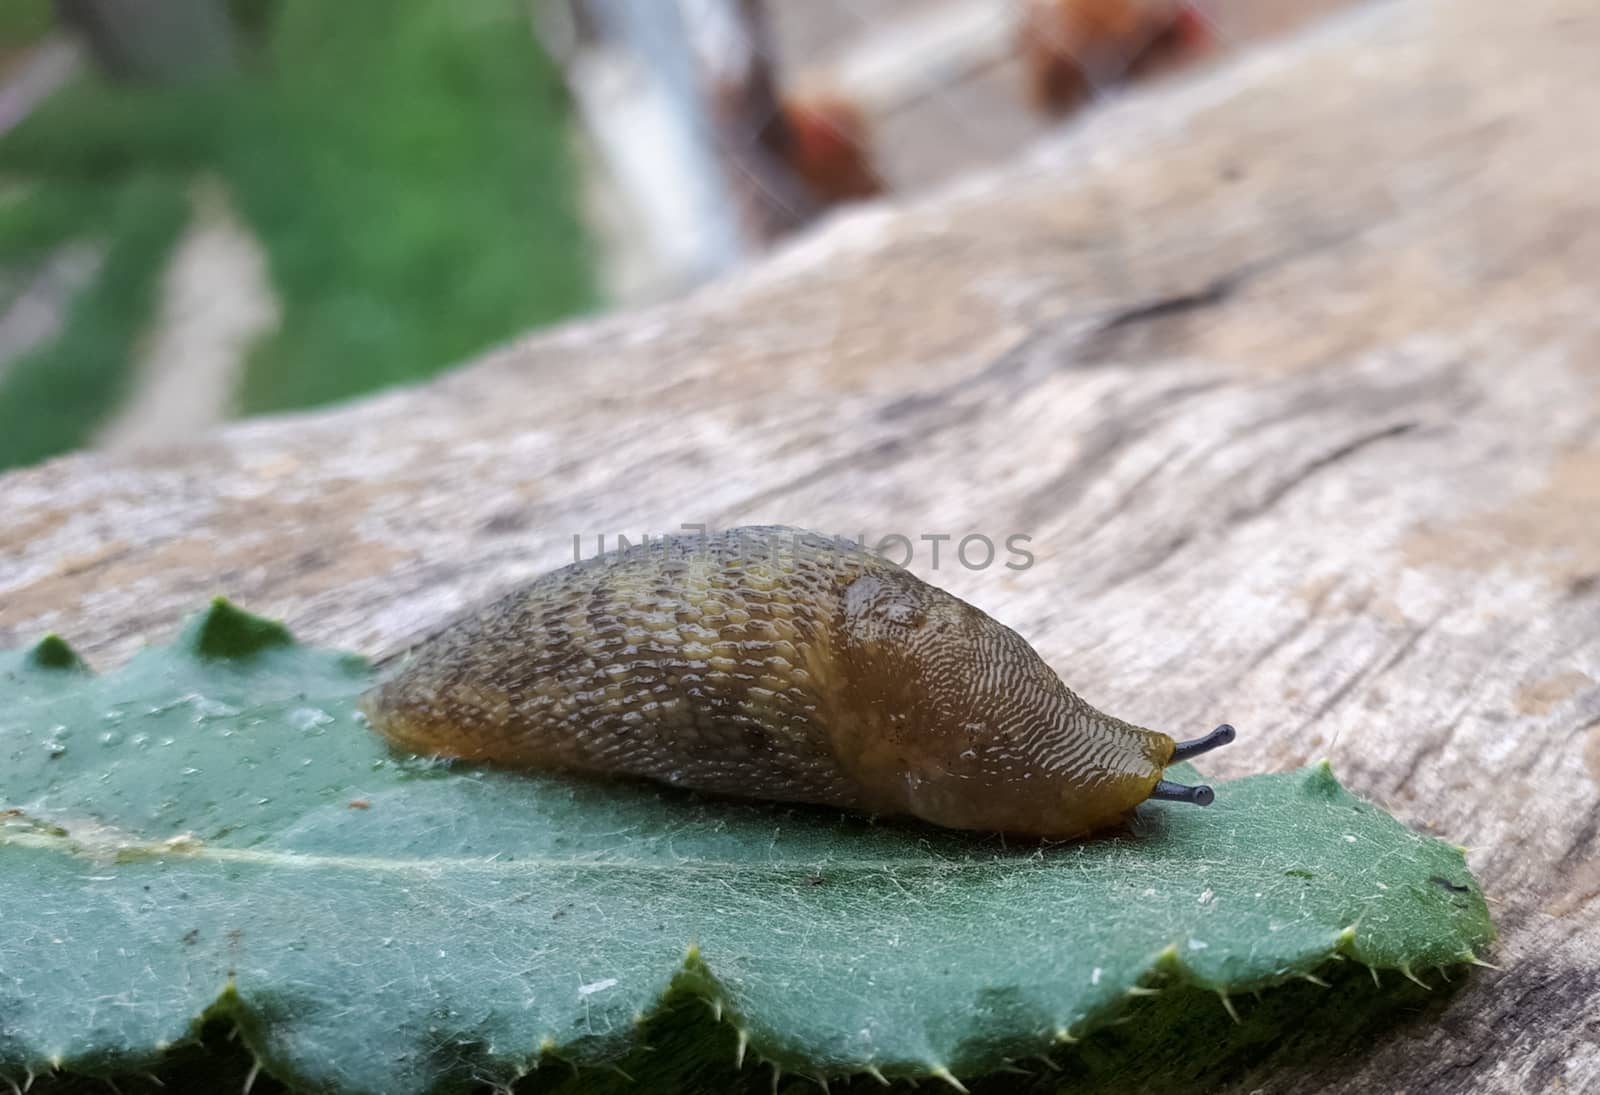 Slug on a piece of grass. clam without a slug shell.